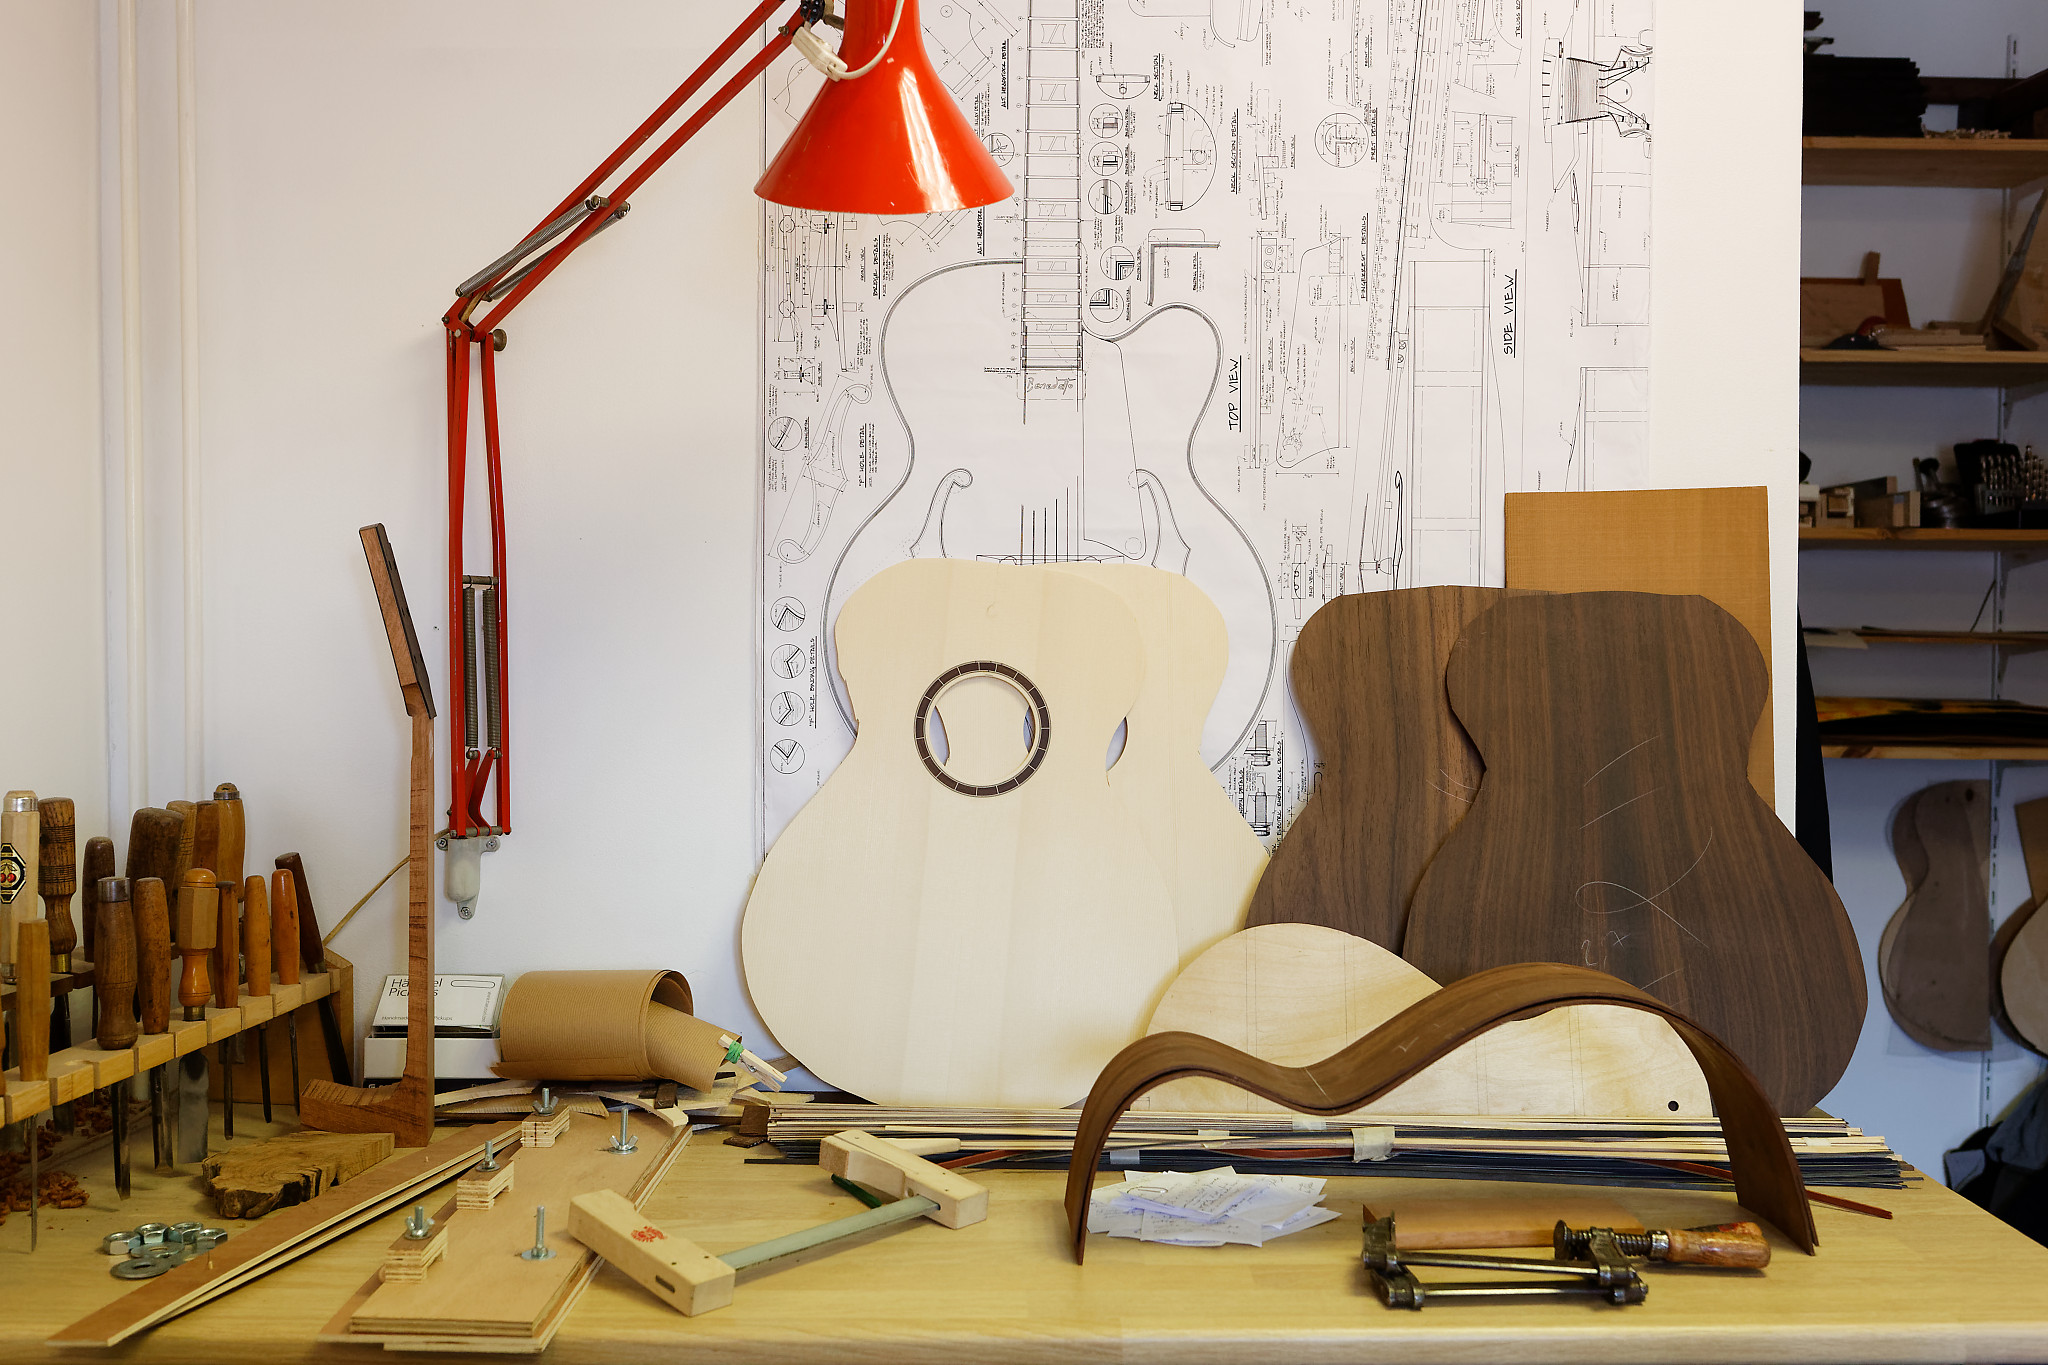 Les différentes pièces
d'une fabrication de guitare folk.